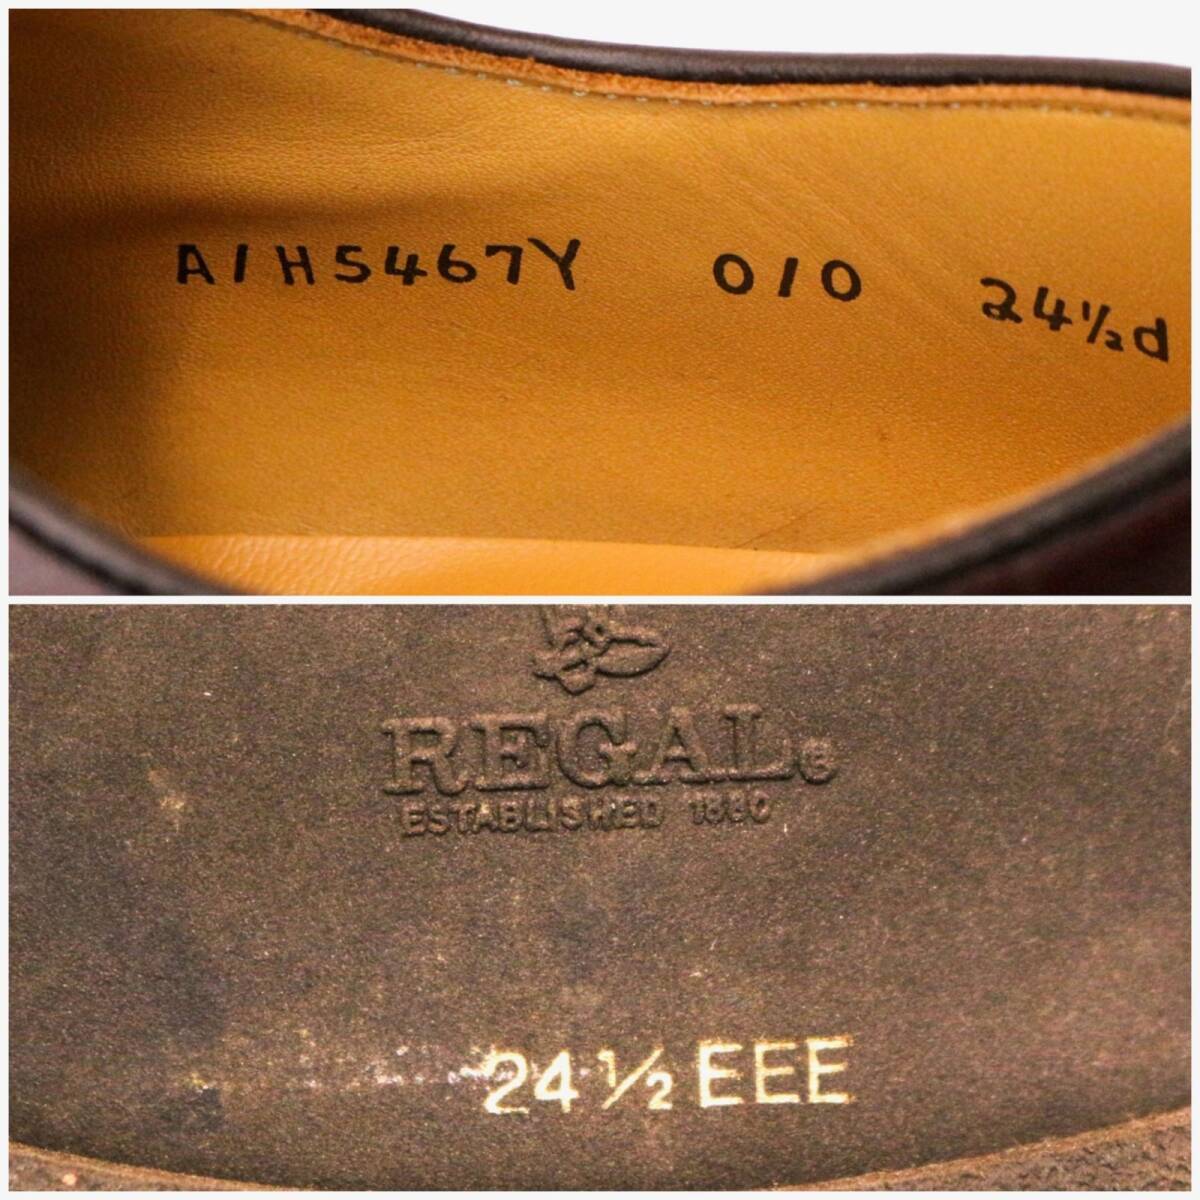 リーガル Y010BA 革靴 レザーシューズ 24cm EEE レザー 本革 ワインレッド ボルドー バーガンディ 茶 ブラウン brown REGAL